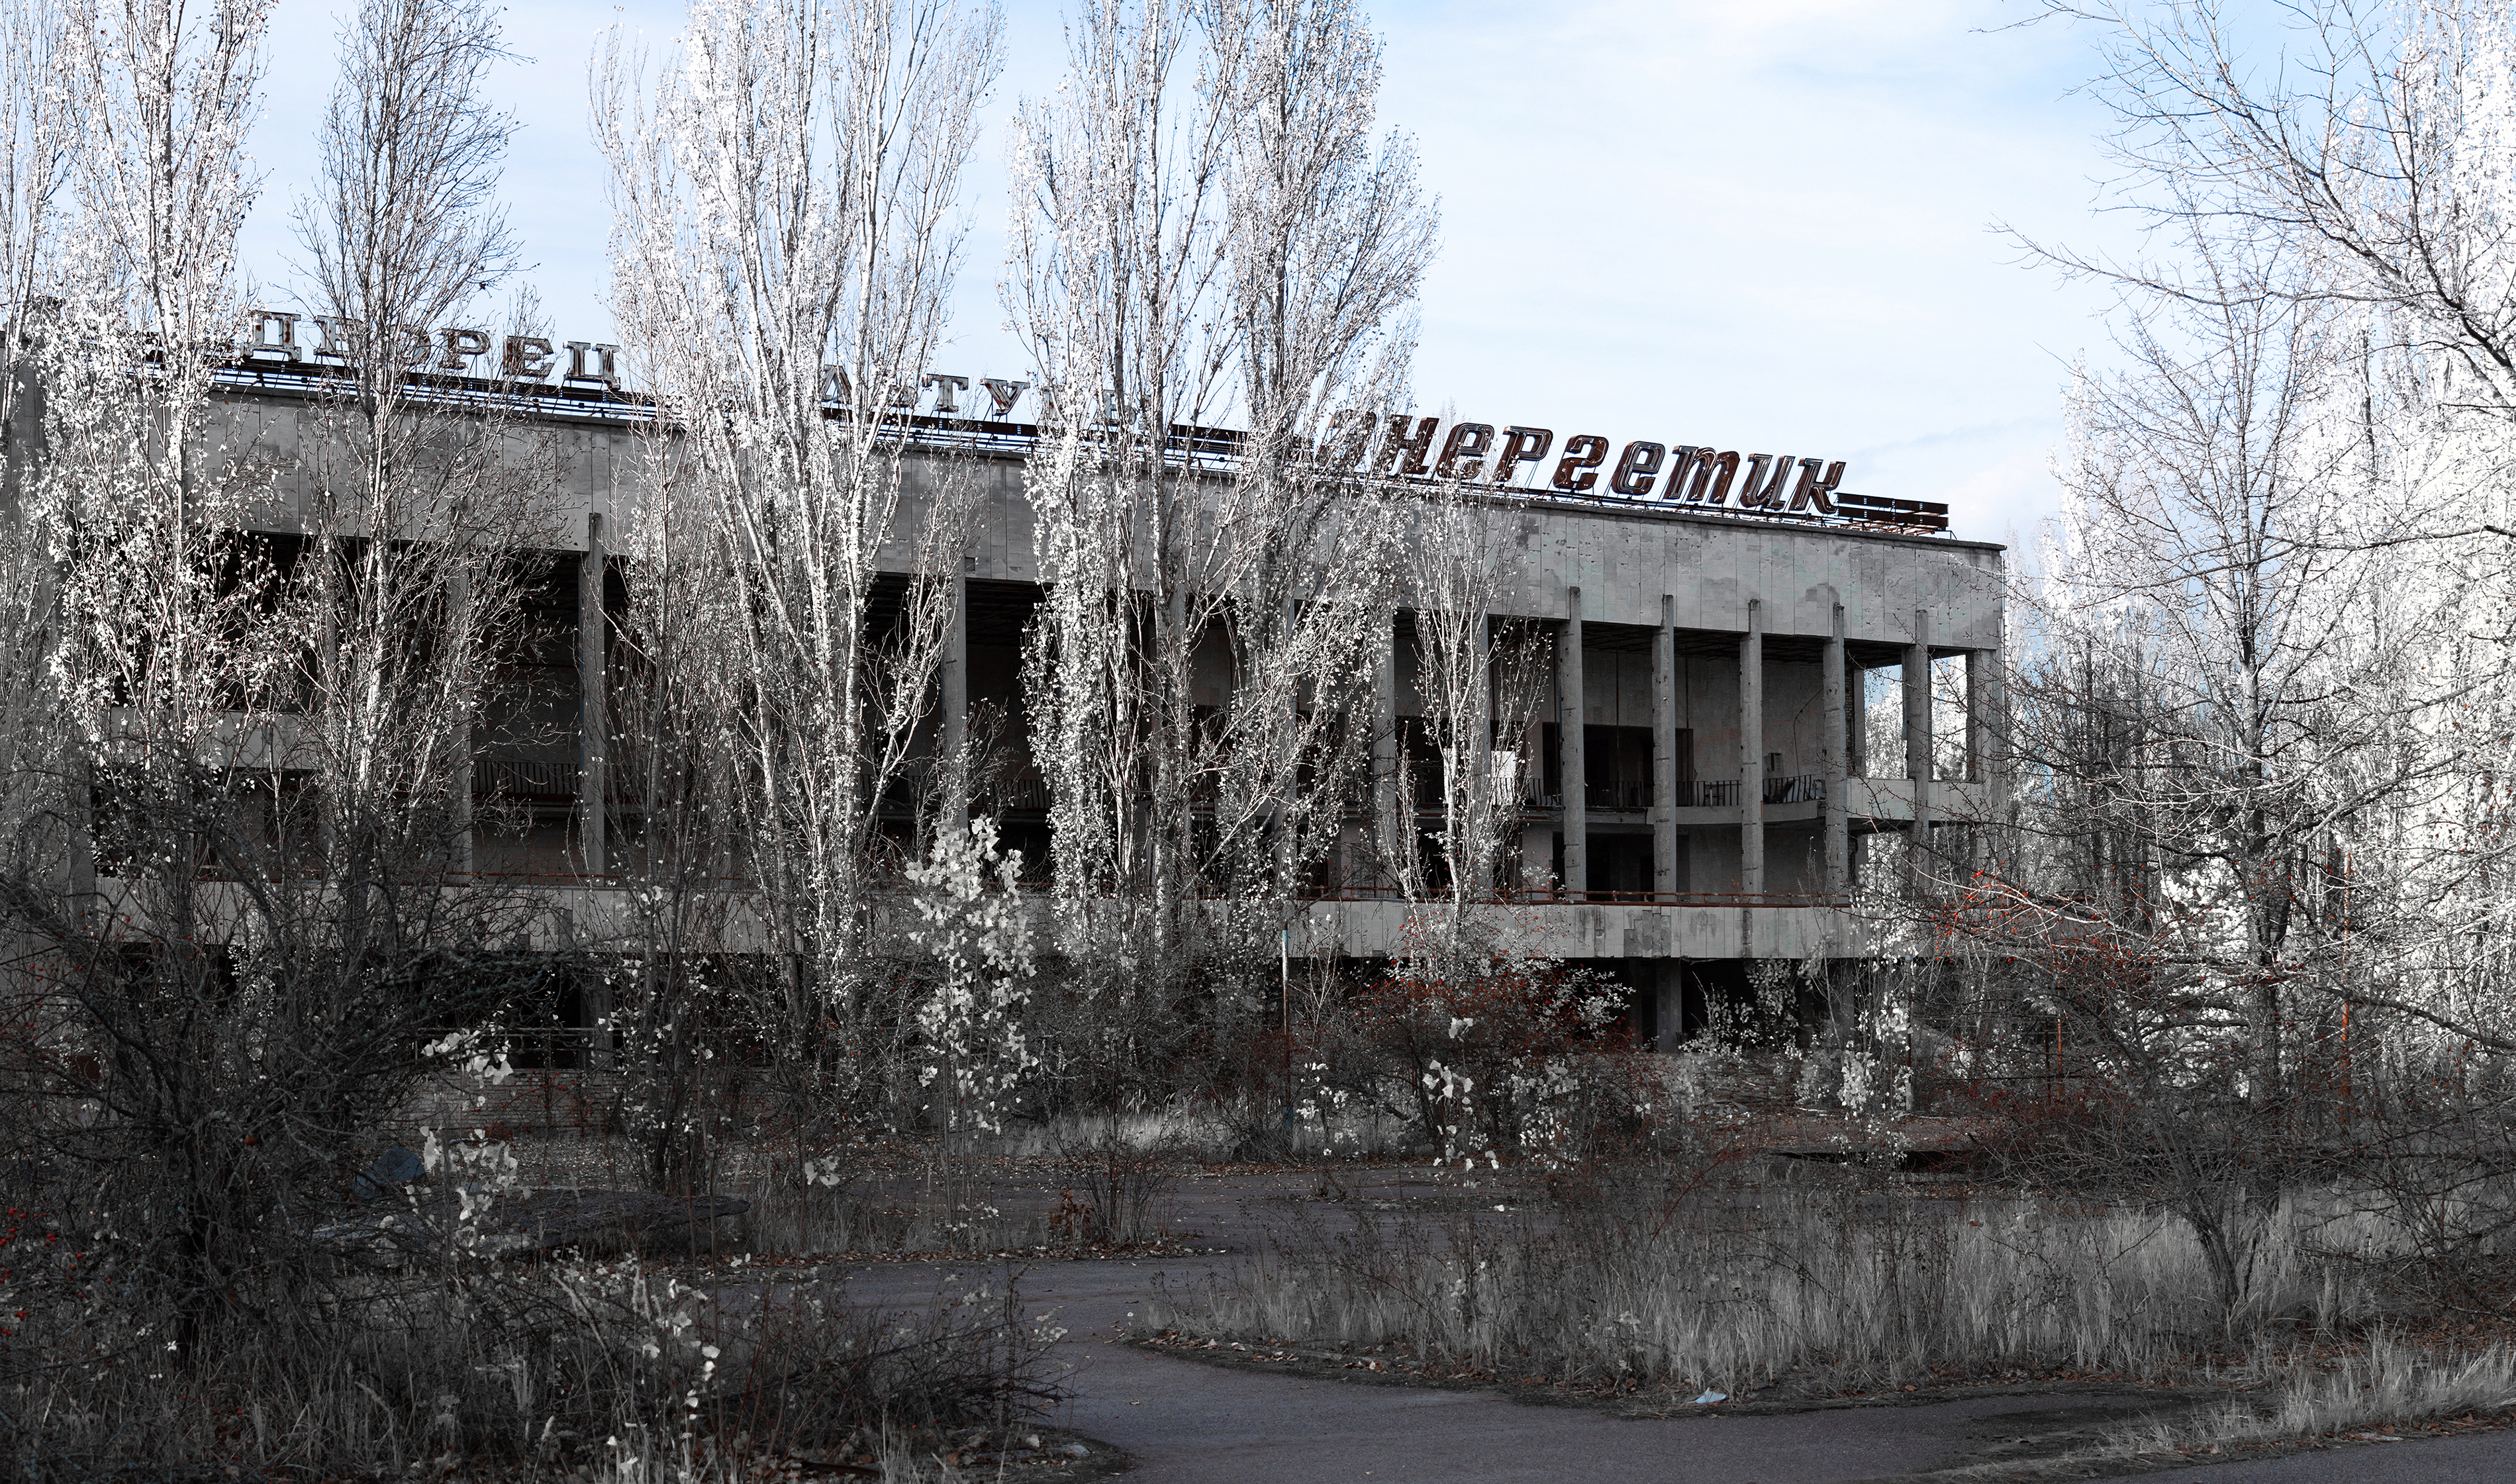 Pripyat Chernobyl Landscape Abandoned 3800x2242